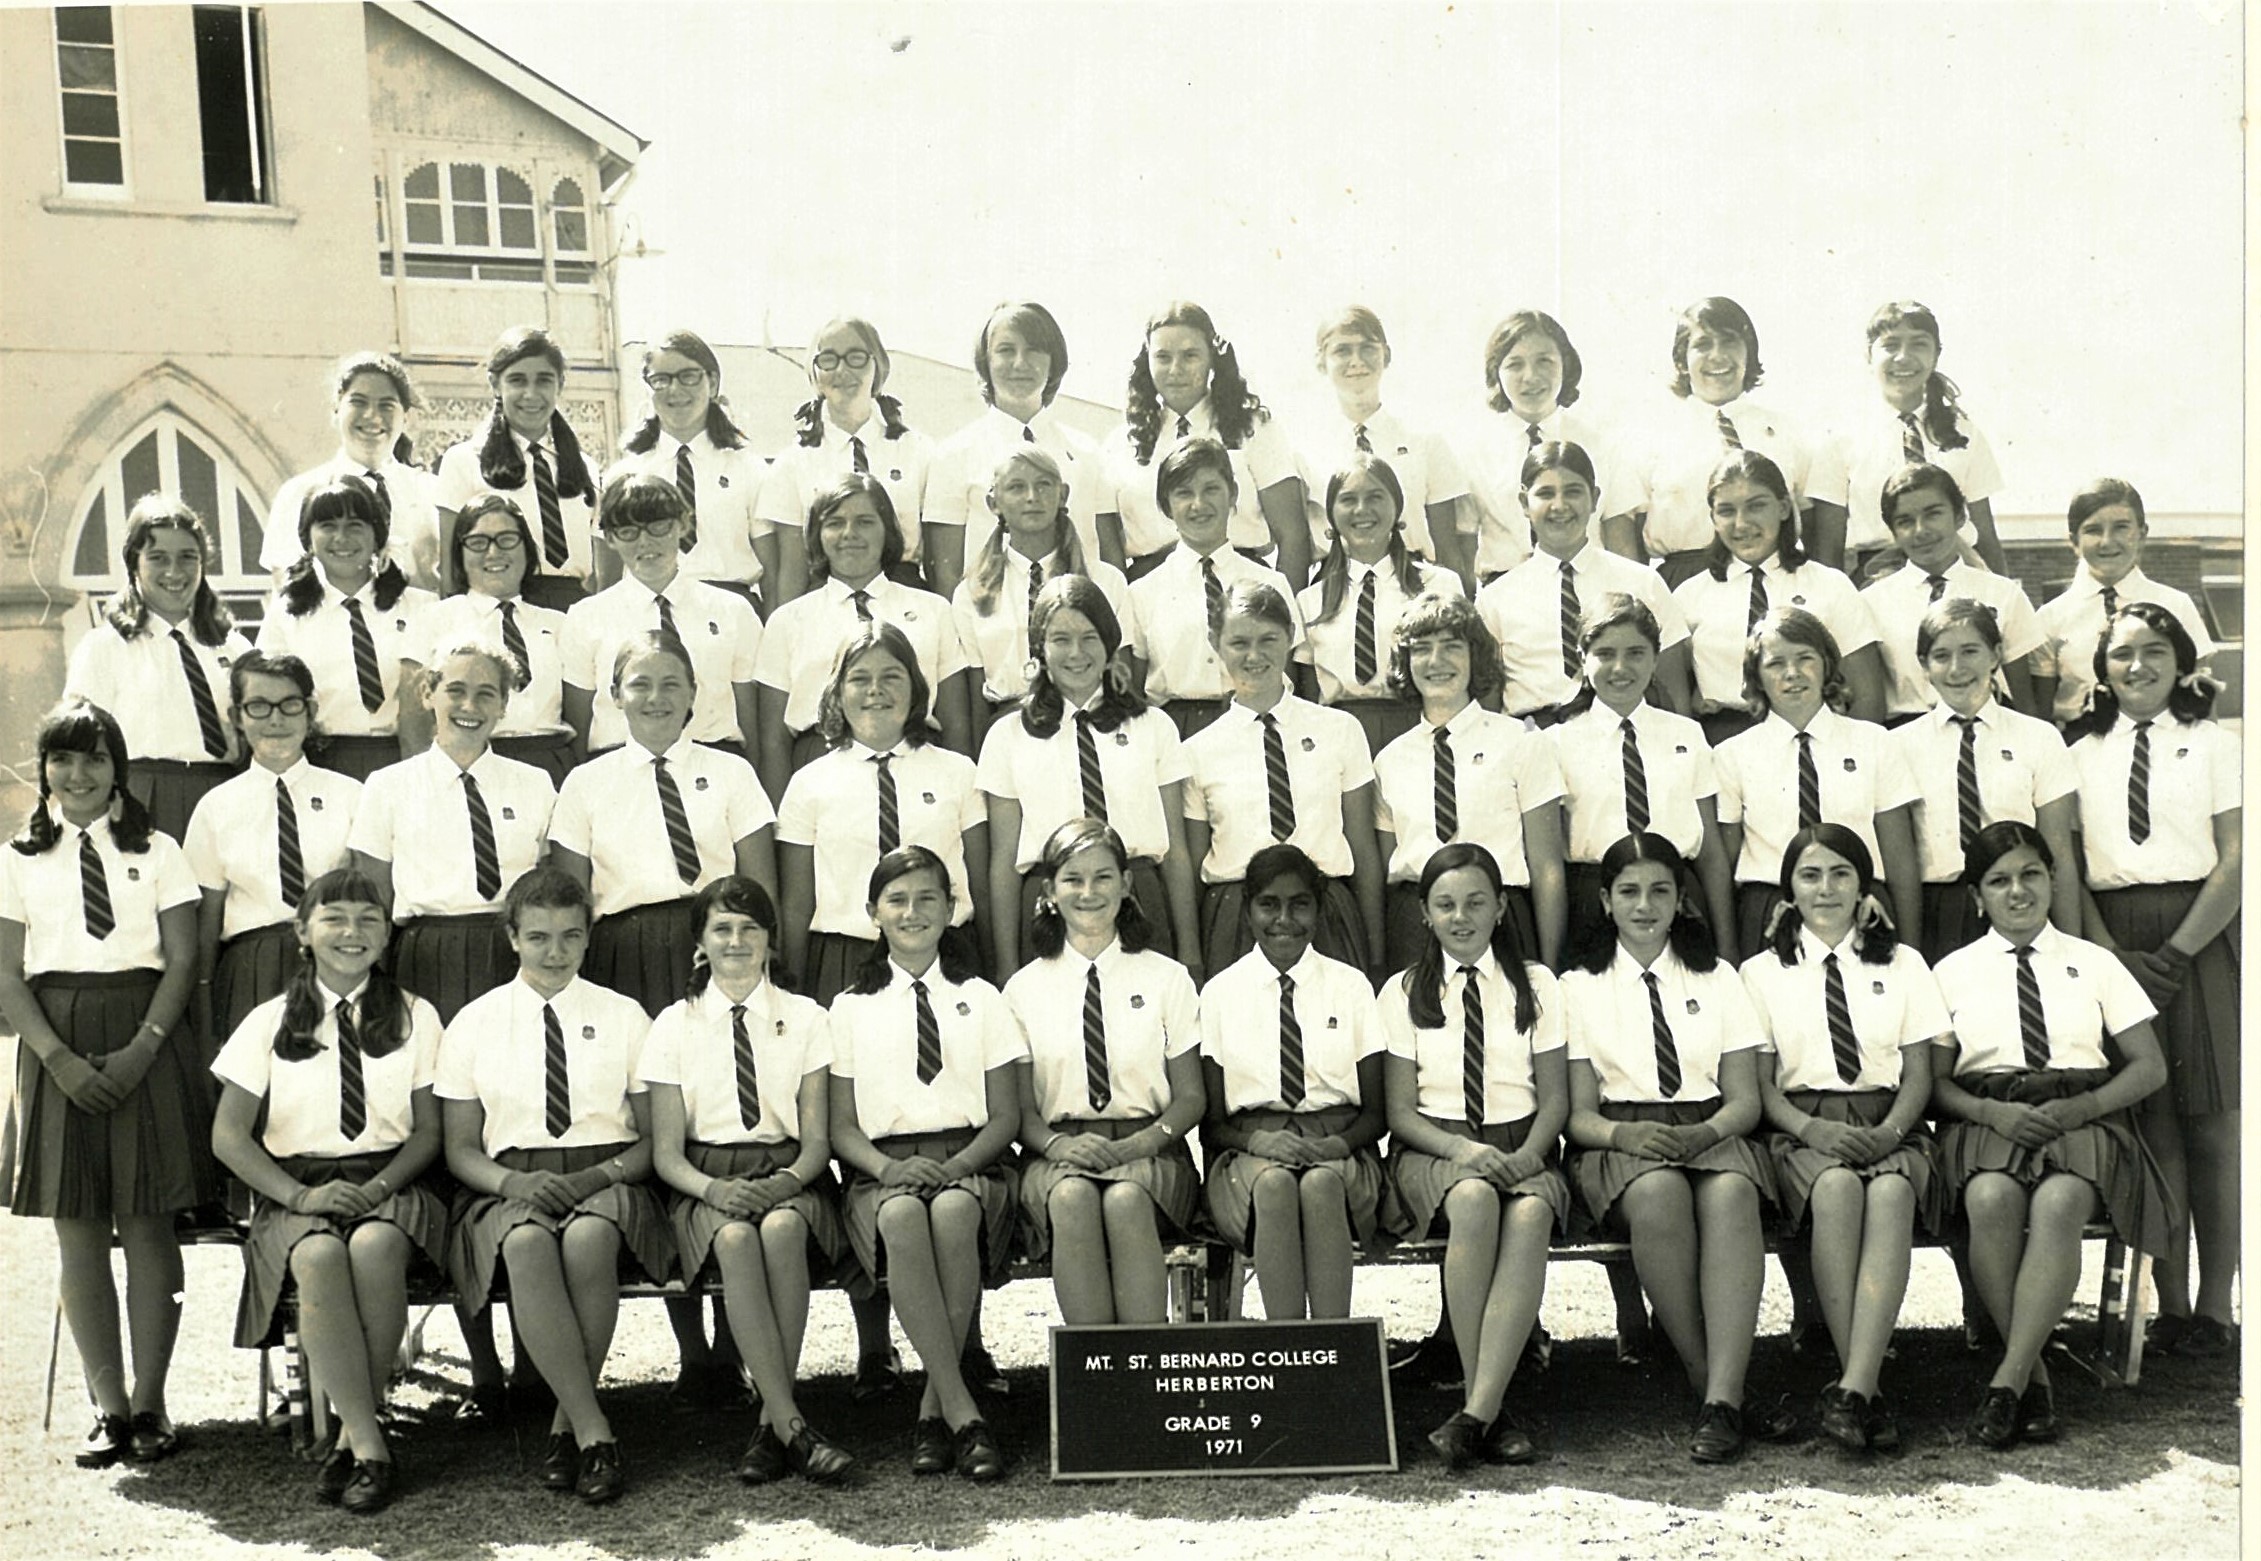 1971 Grade 9